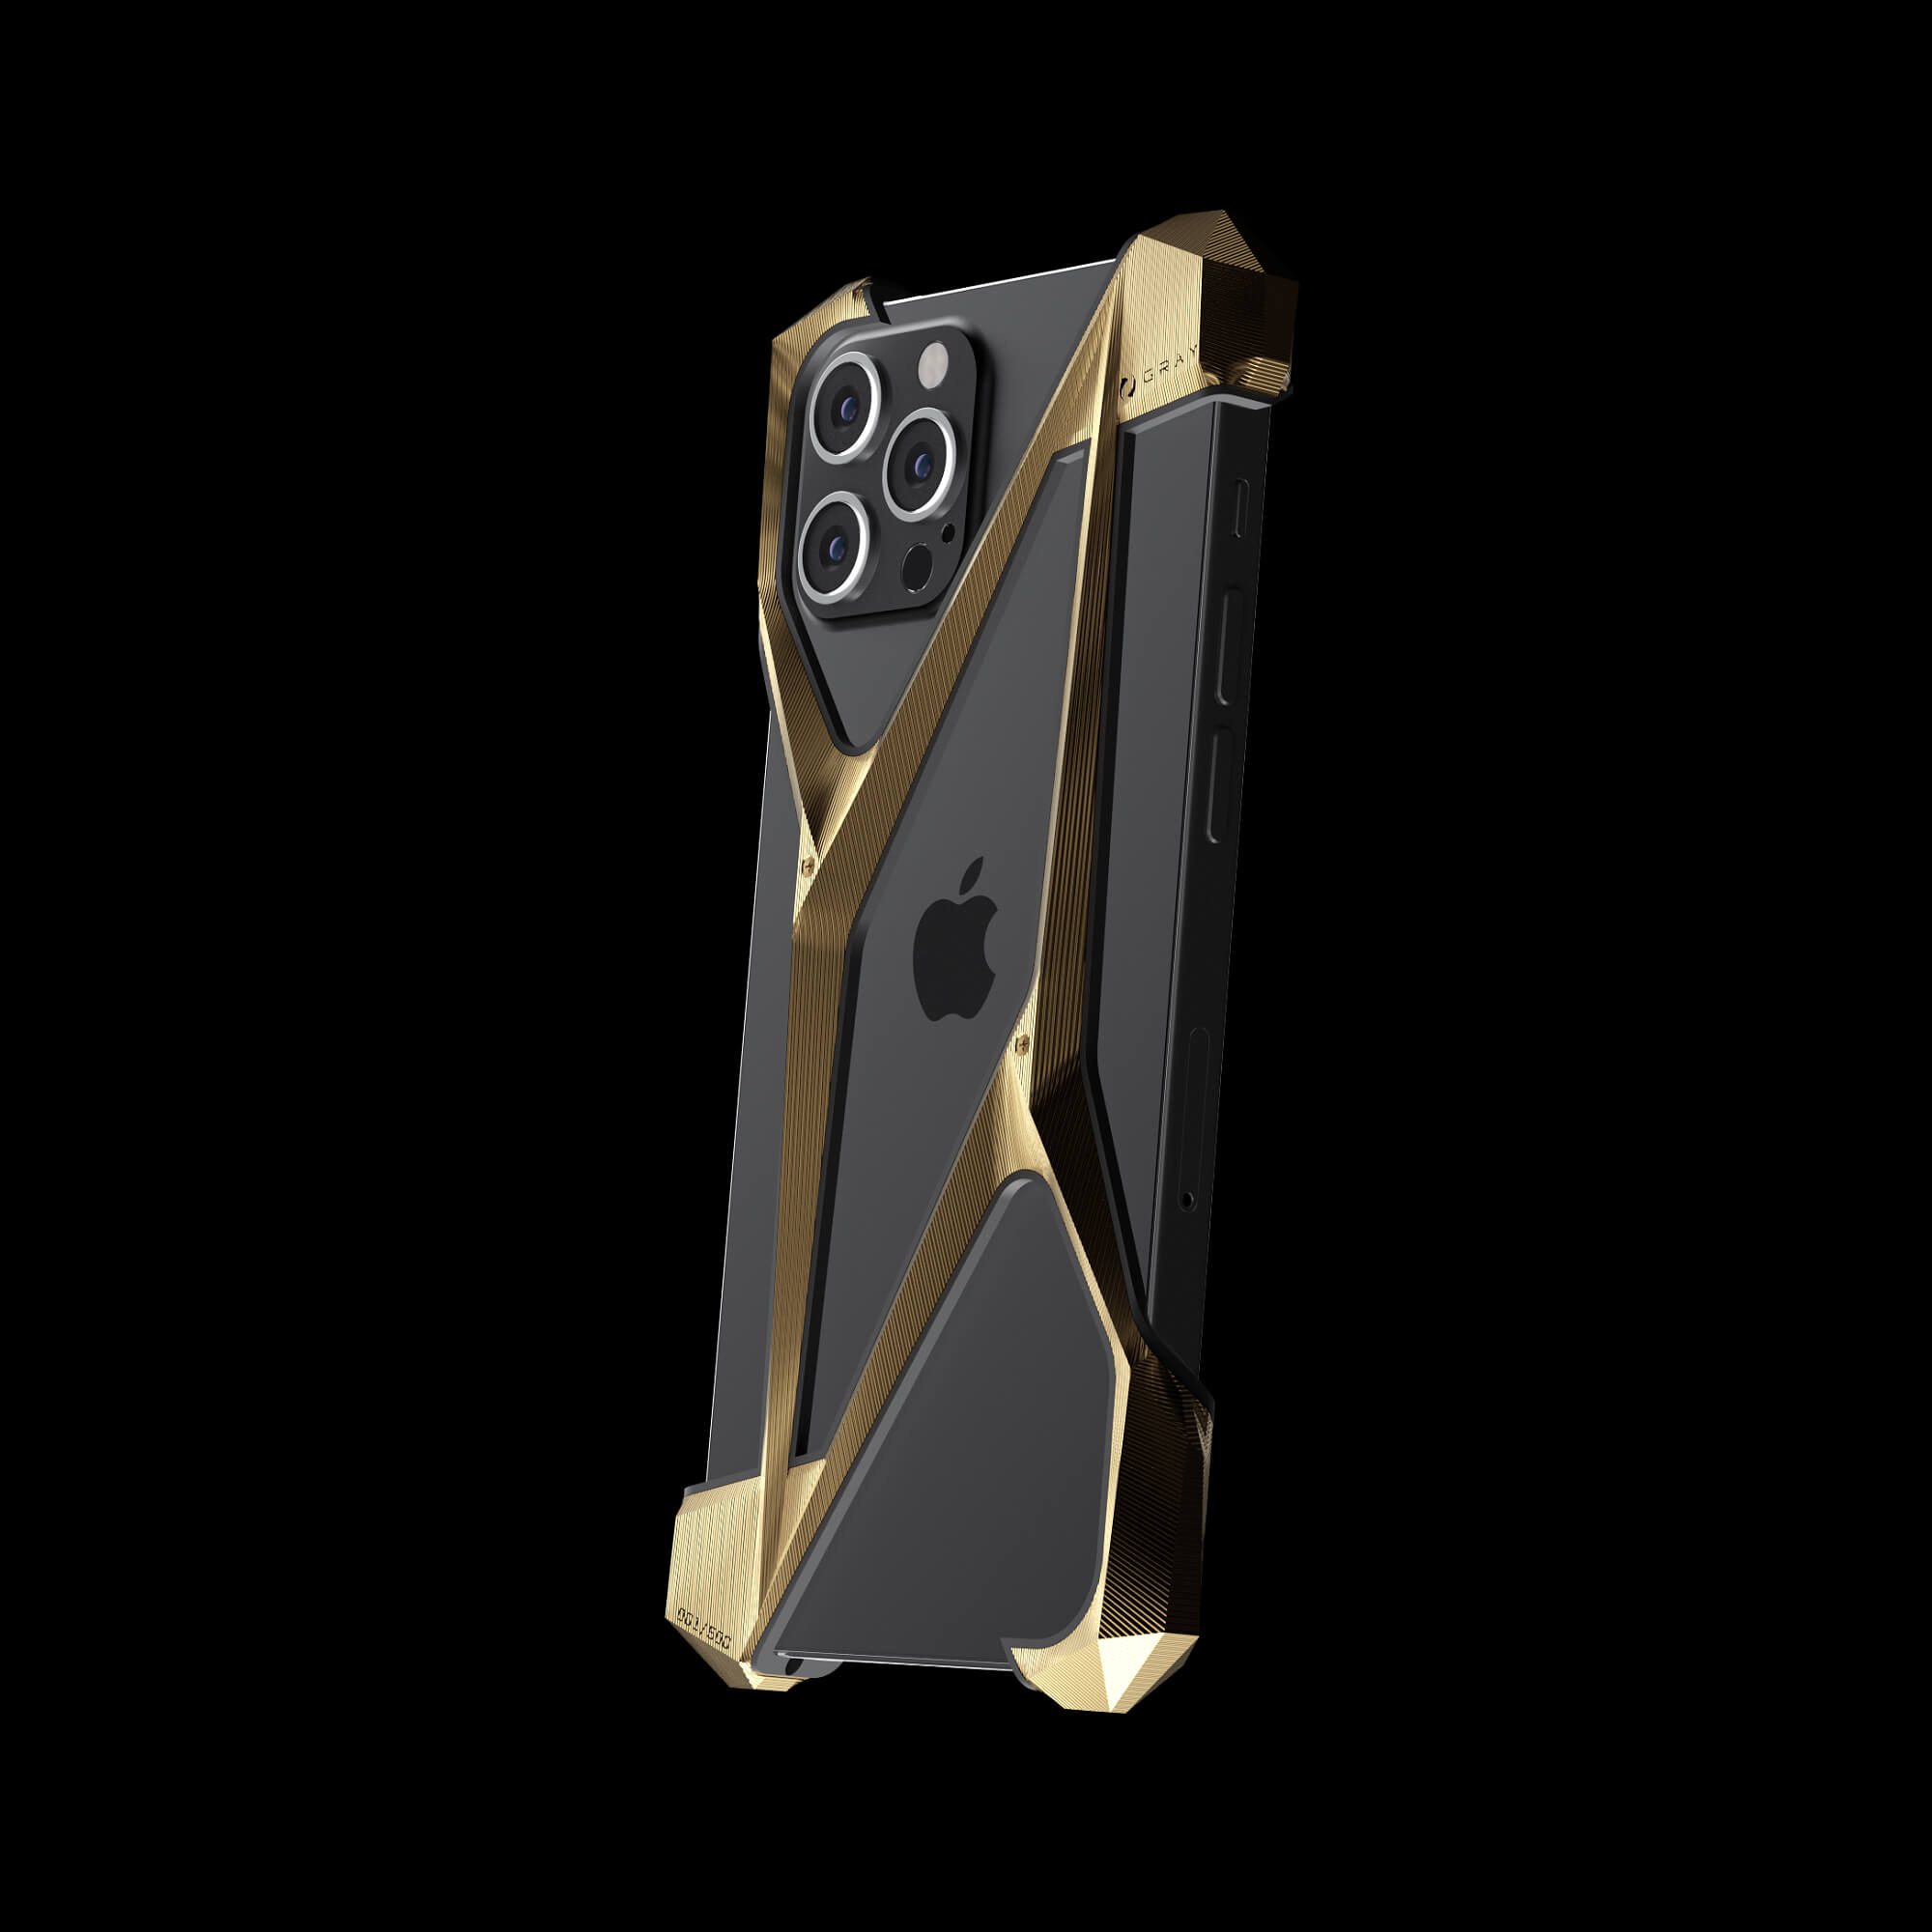 Alter Ego L Titanium Gold Iphone 12 Pro Max Cases